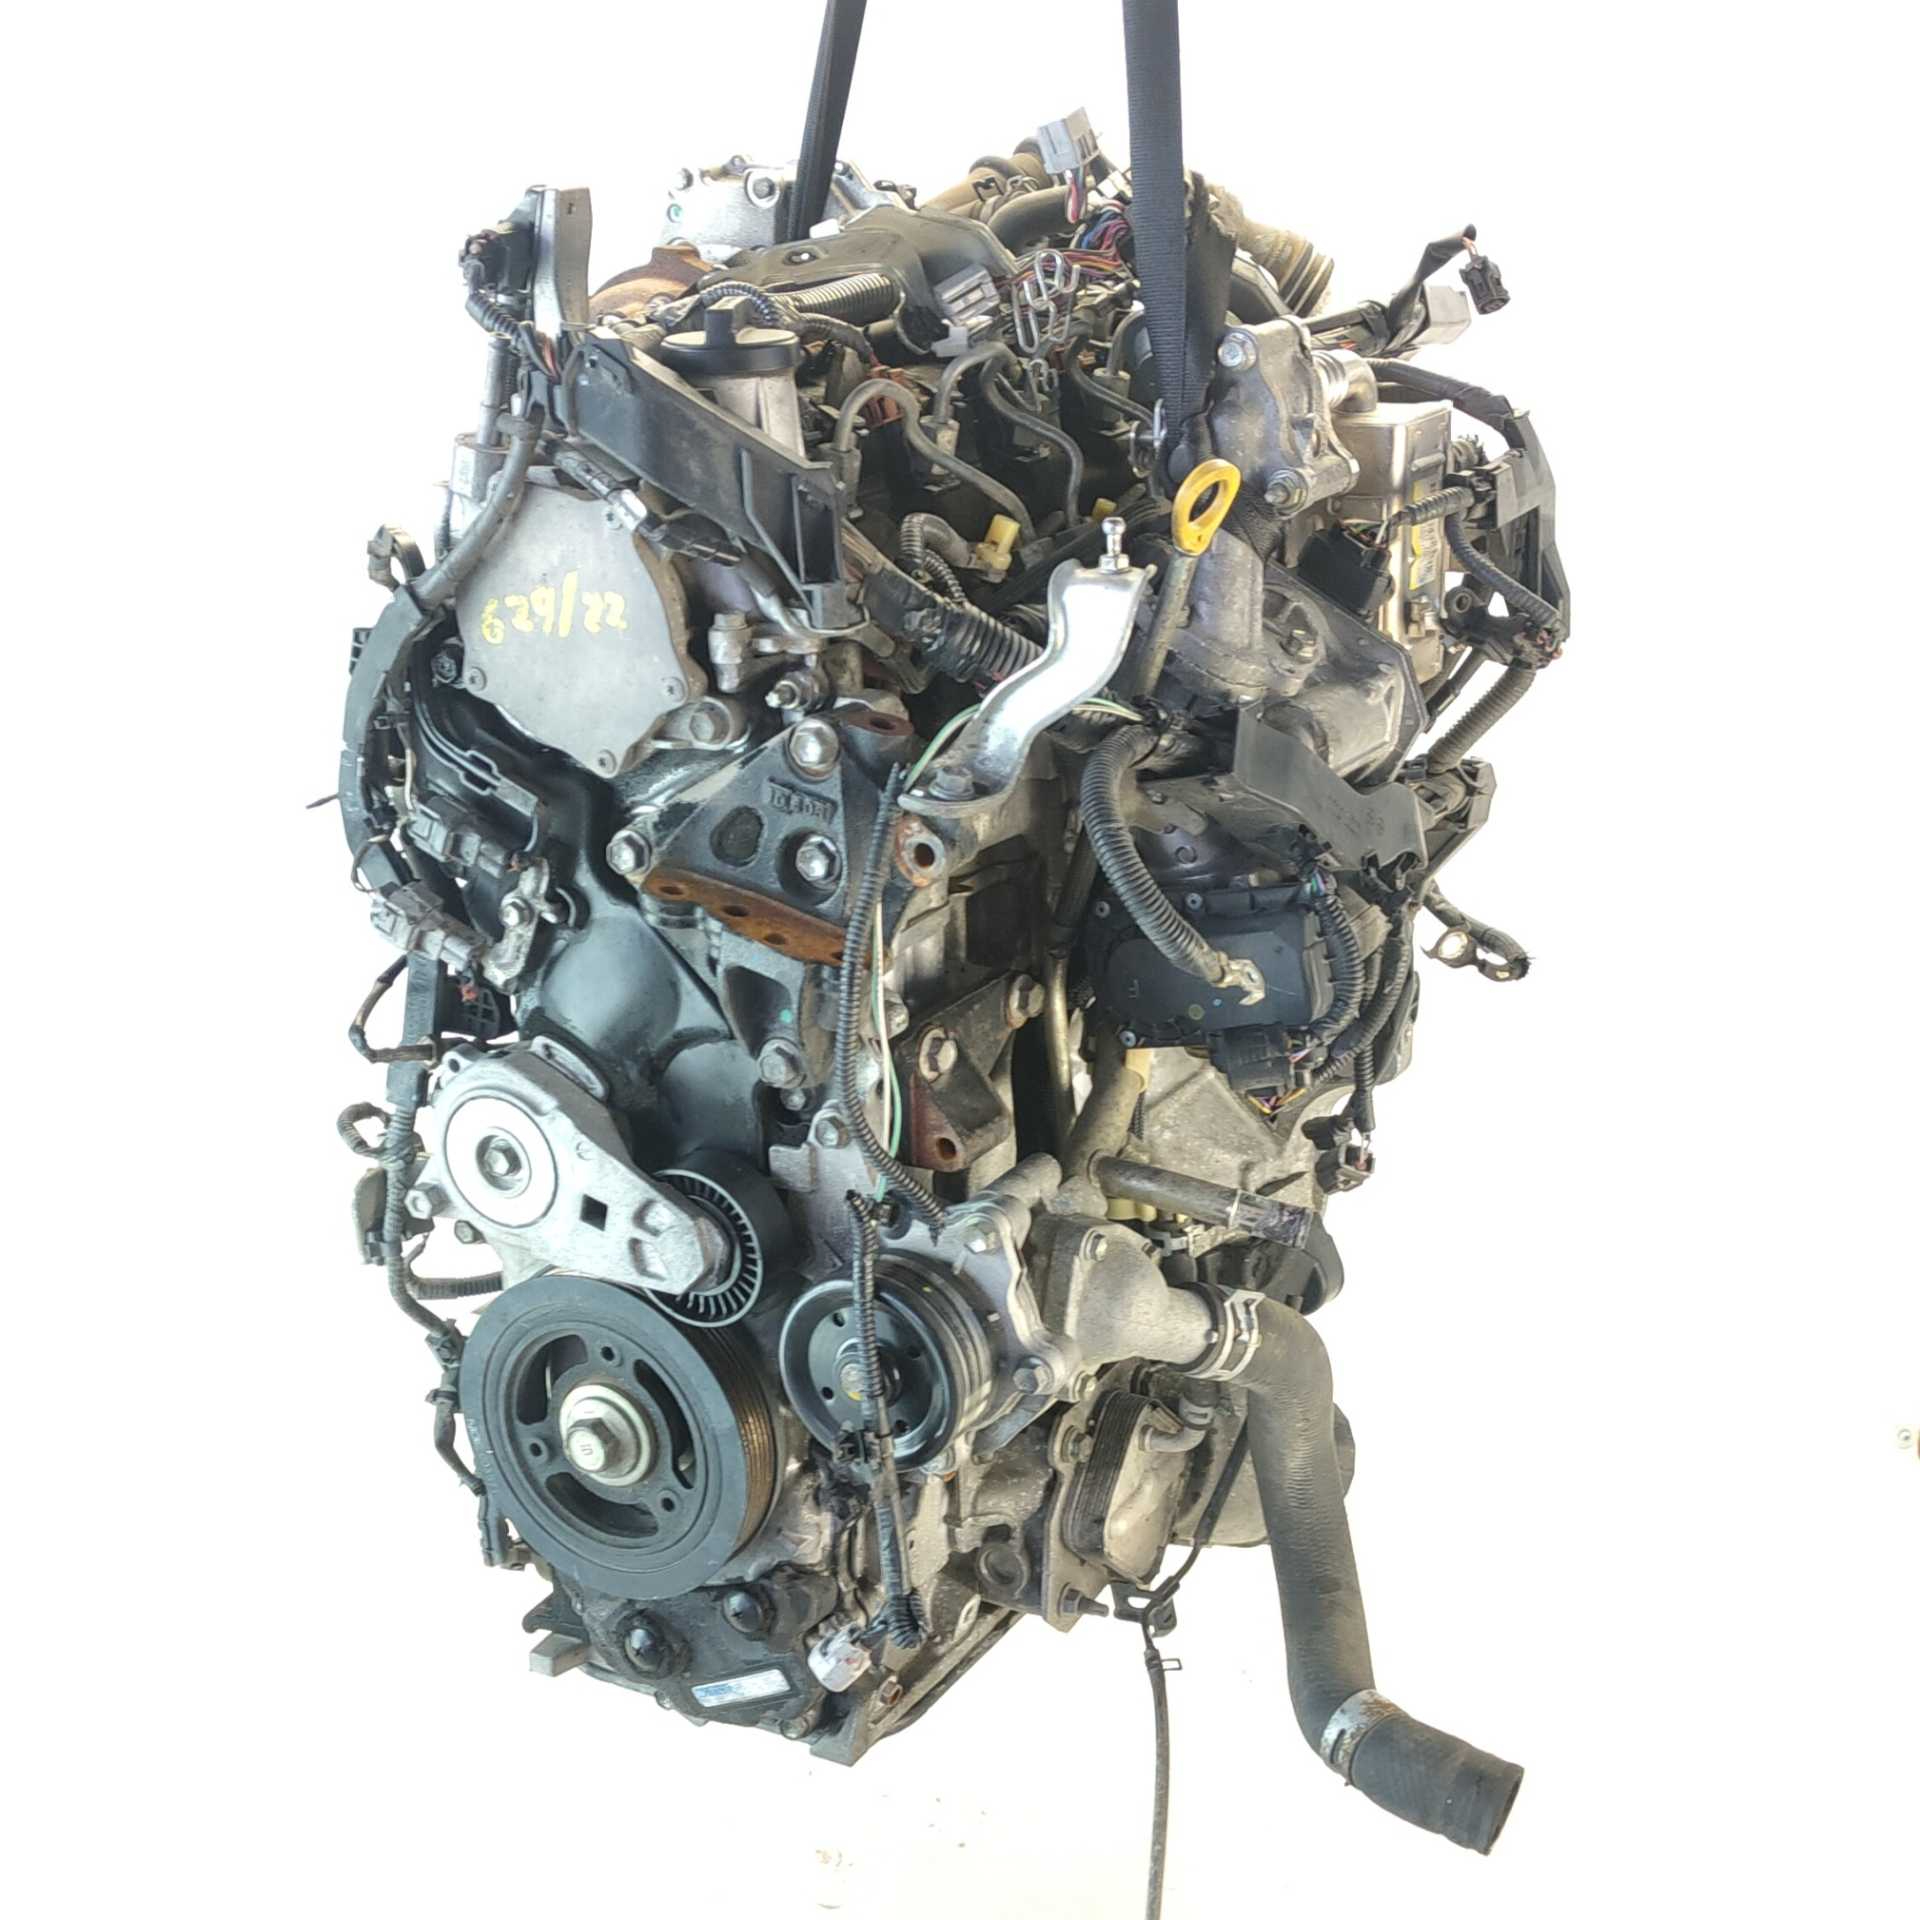 MOTOR TOYOTA AURIS 1.4 D-4D (NDE150_) (66 KW / 90 CV) (03.2007 - 09.2012)